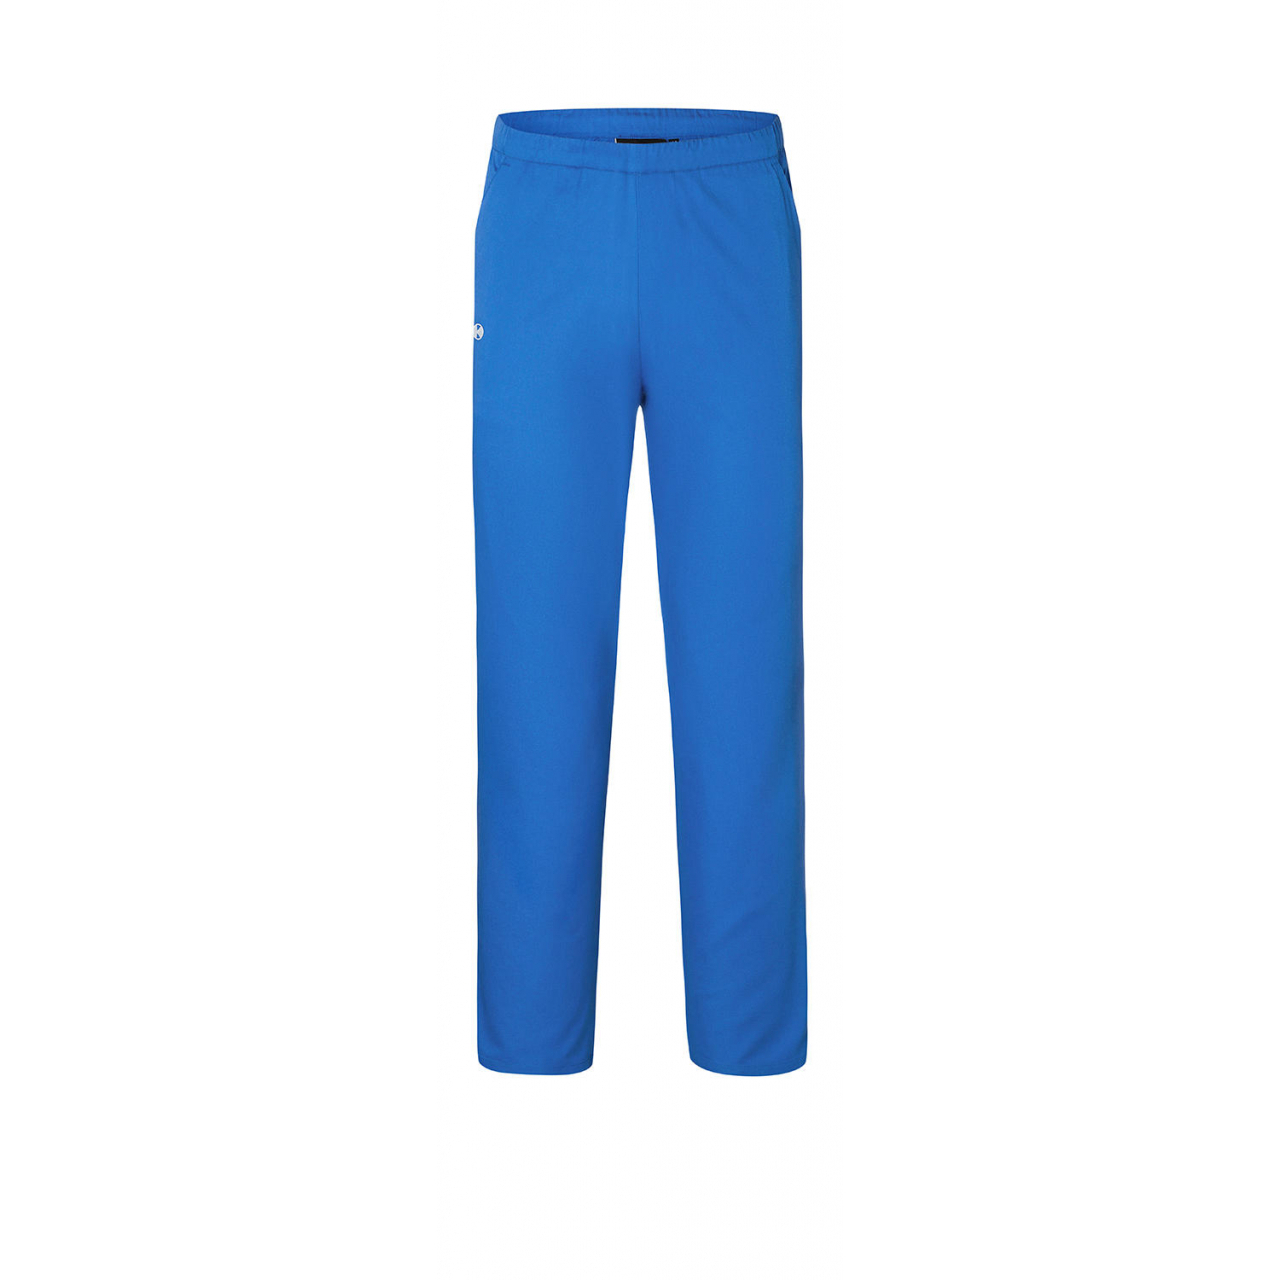 Kalhoty Karlowsky Essential - modré, XL